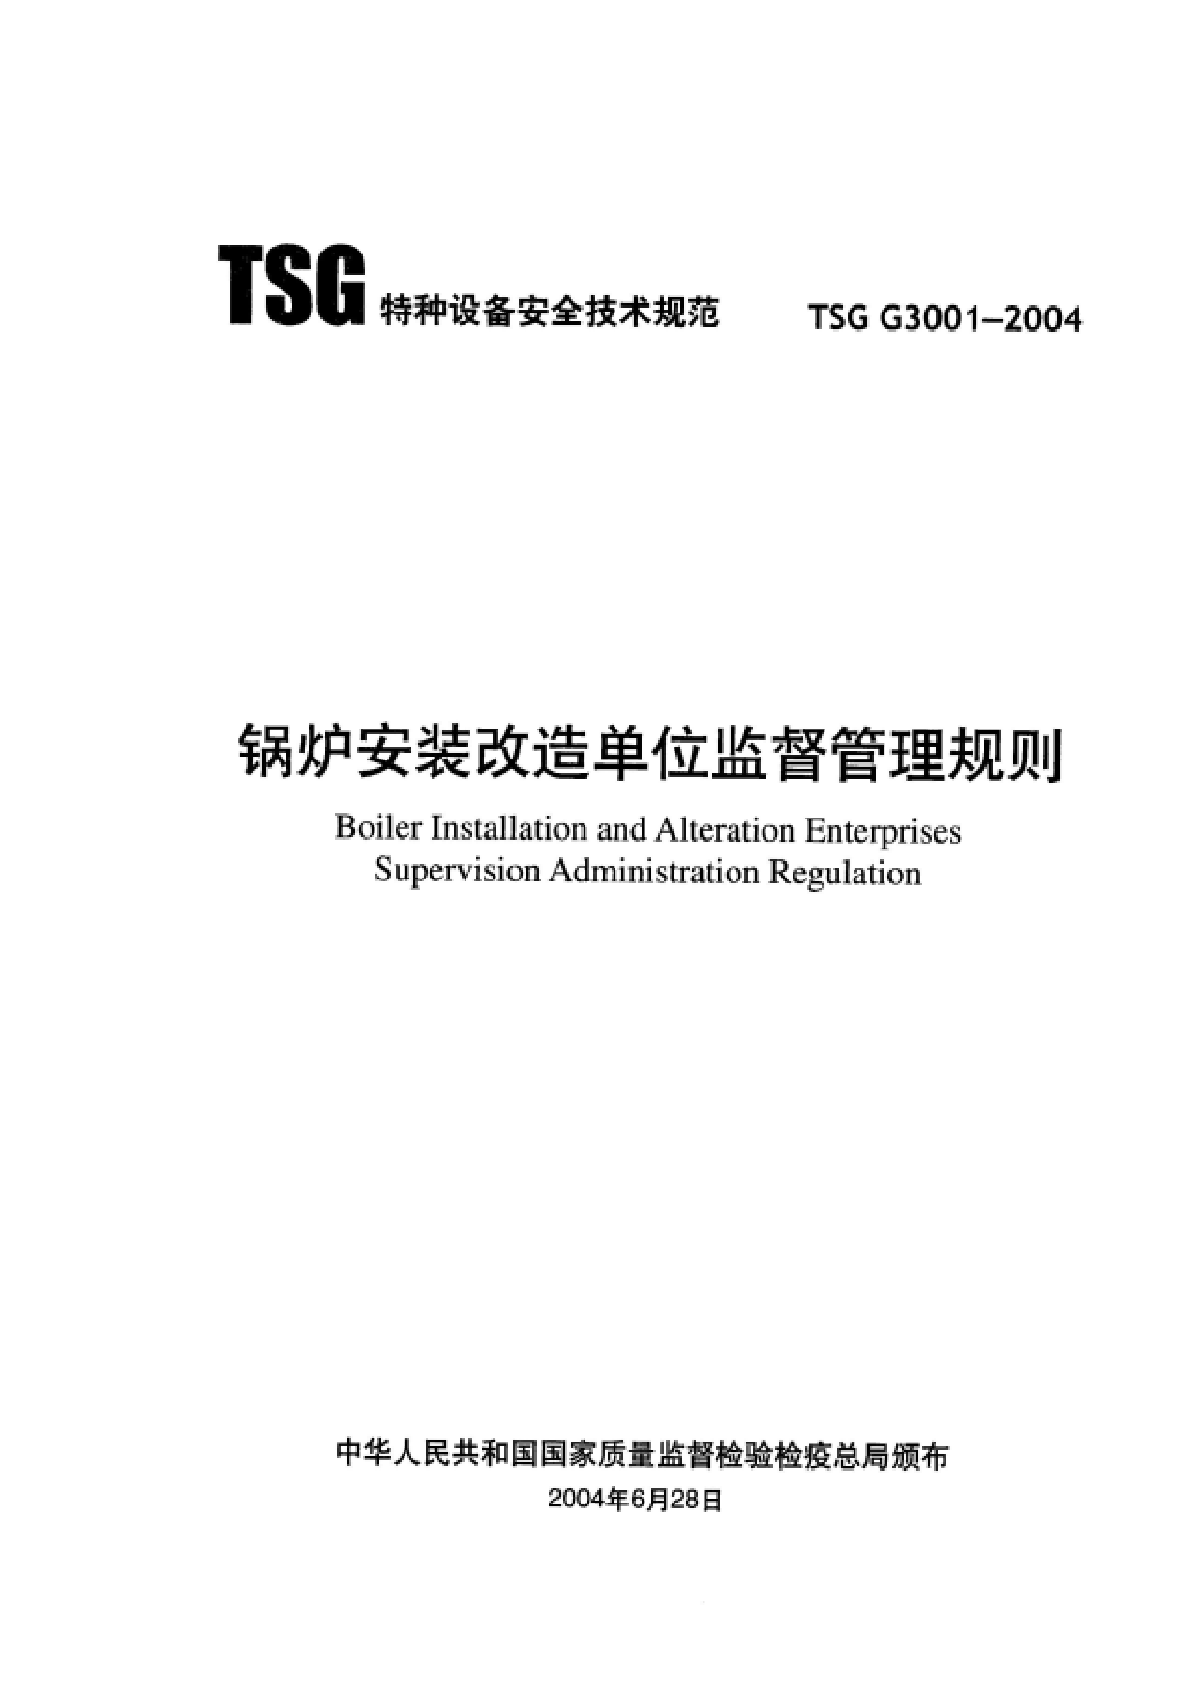 TSG G3001-2004锅炉安装改造单位监督管理规则-图二